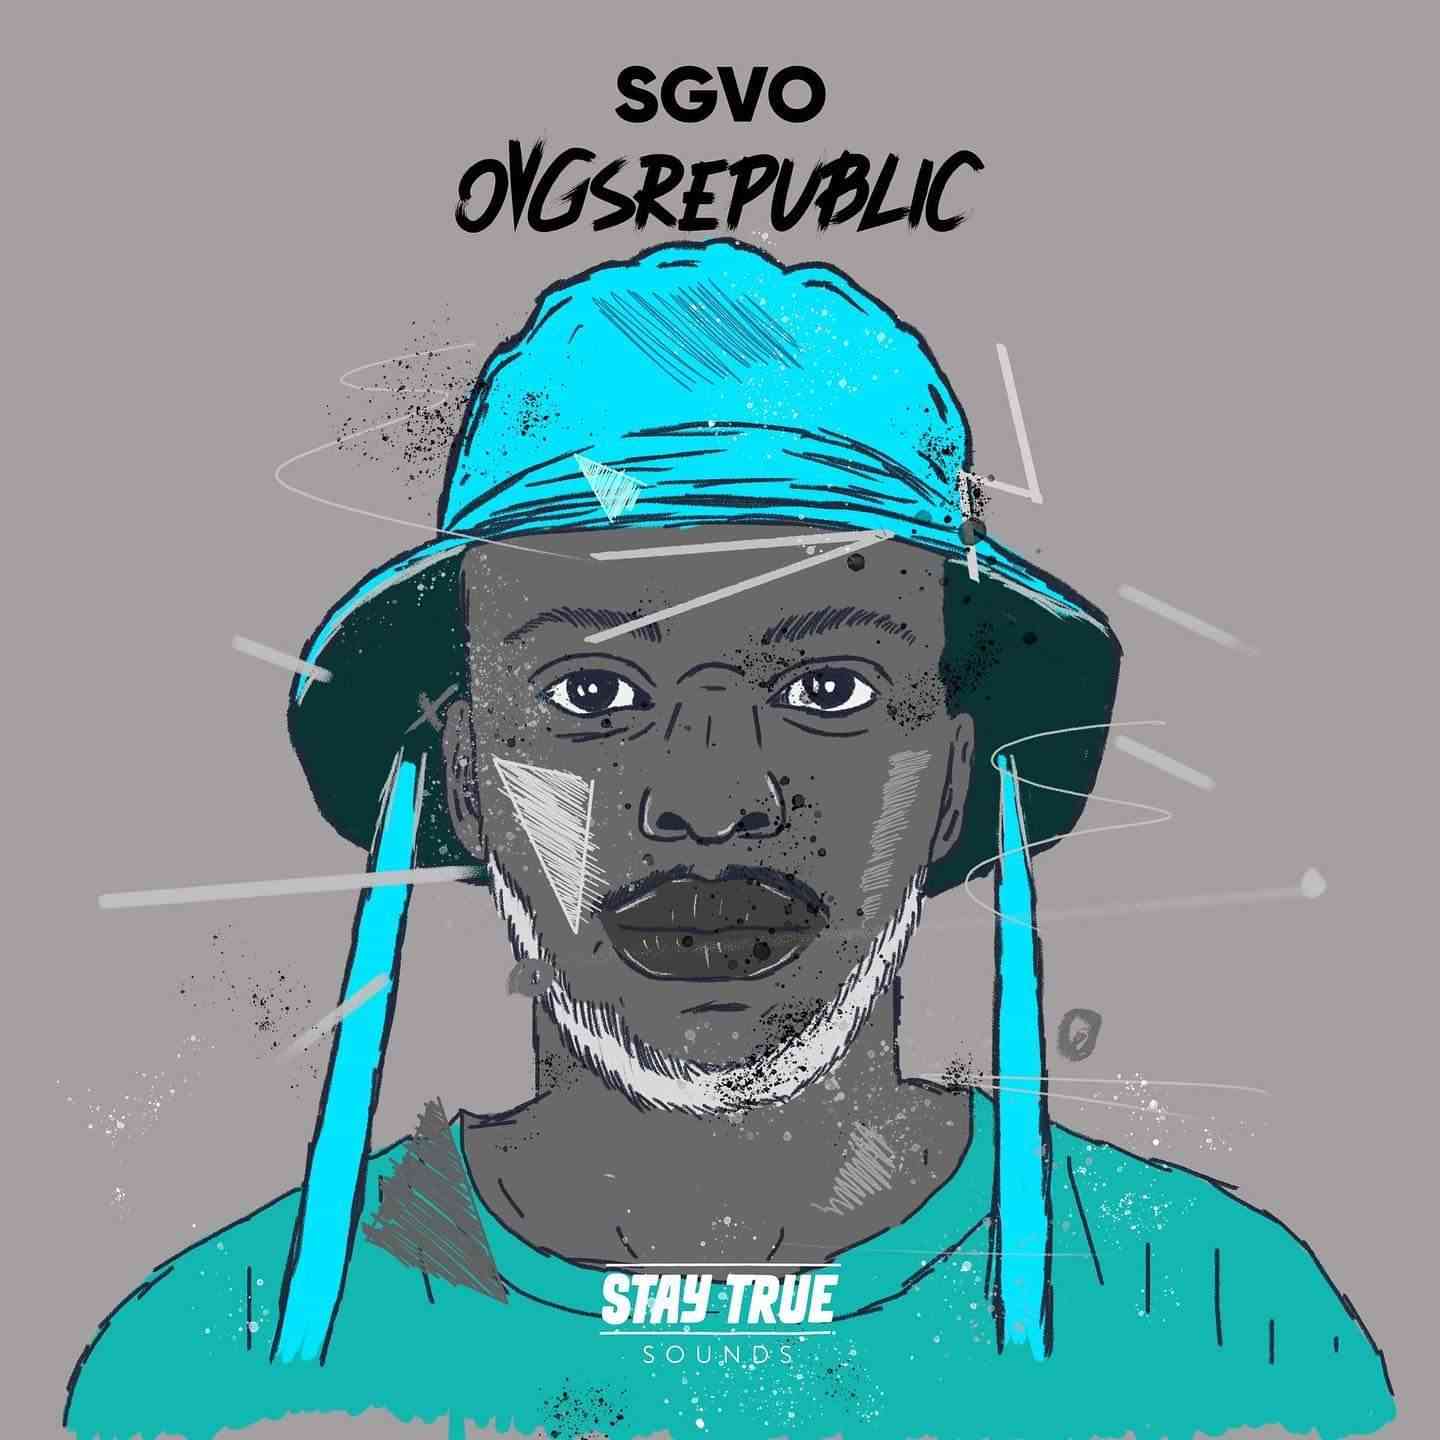 SGVO Drops OVGSREPUBLIC Album